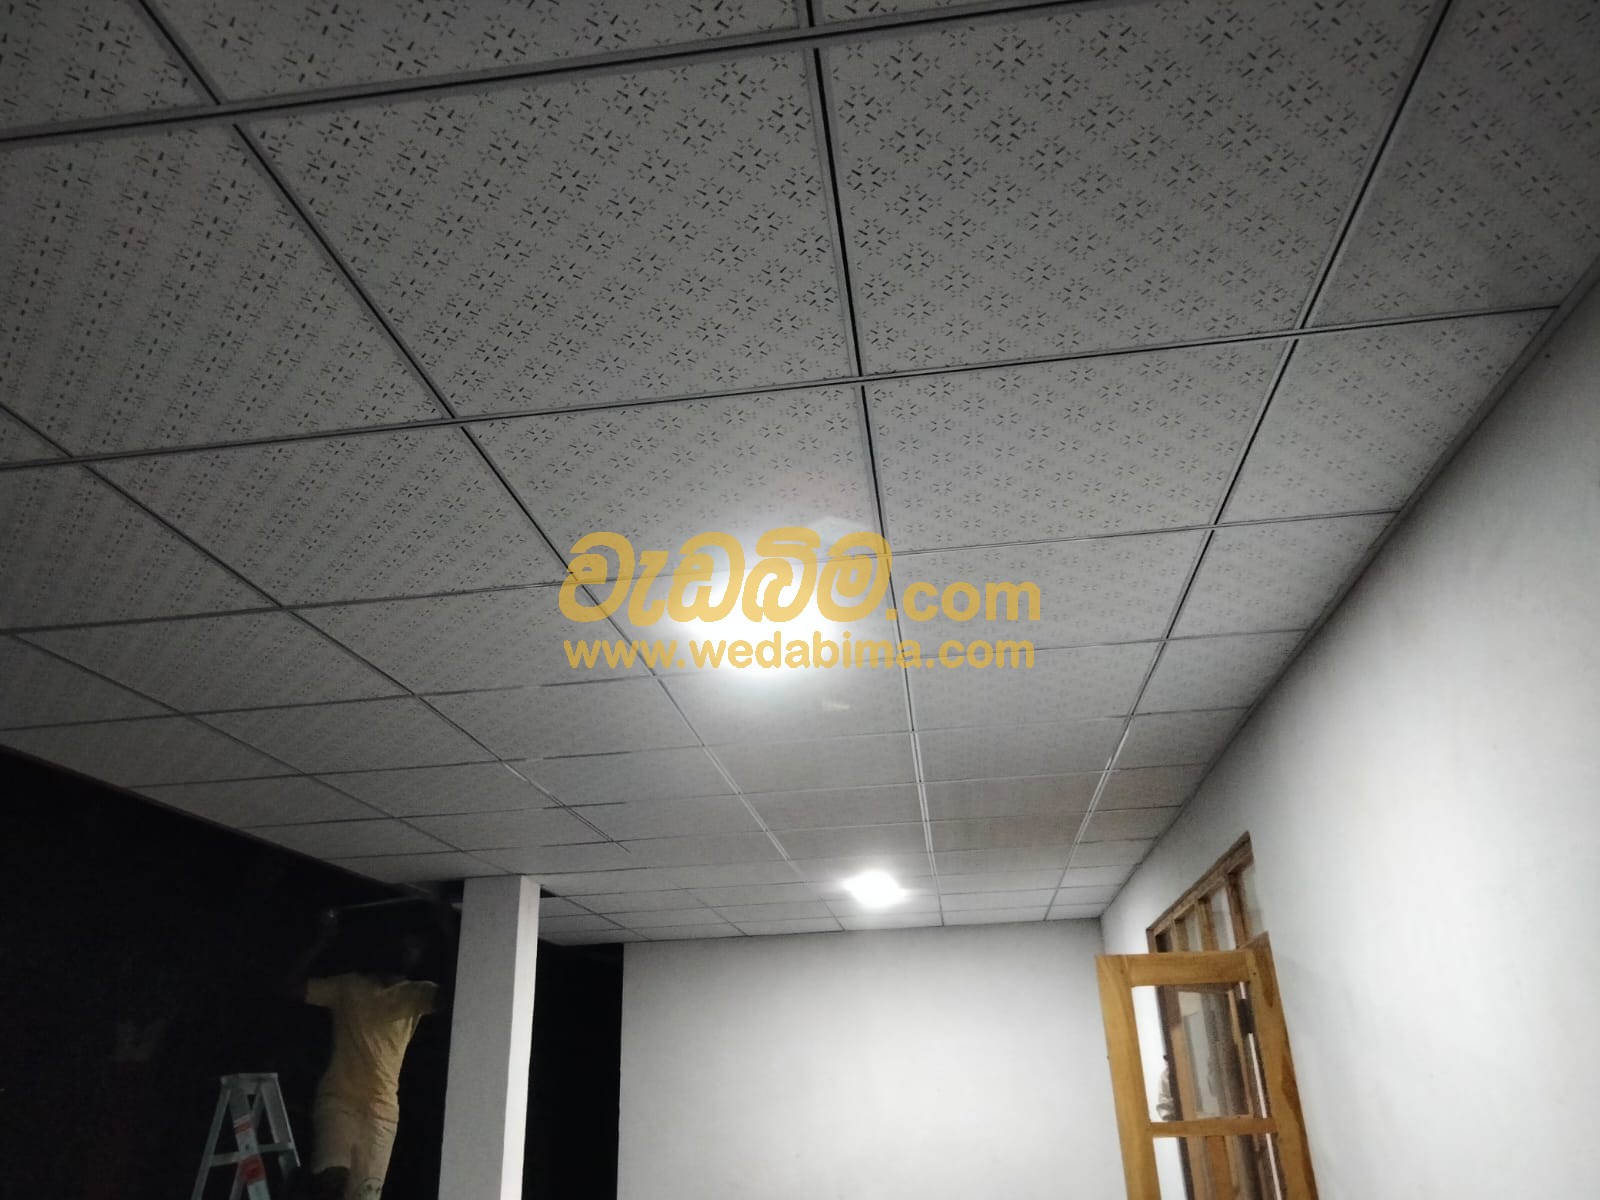 ceiling design price in sri lanka